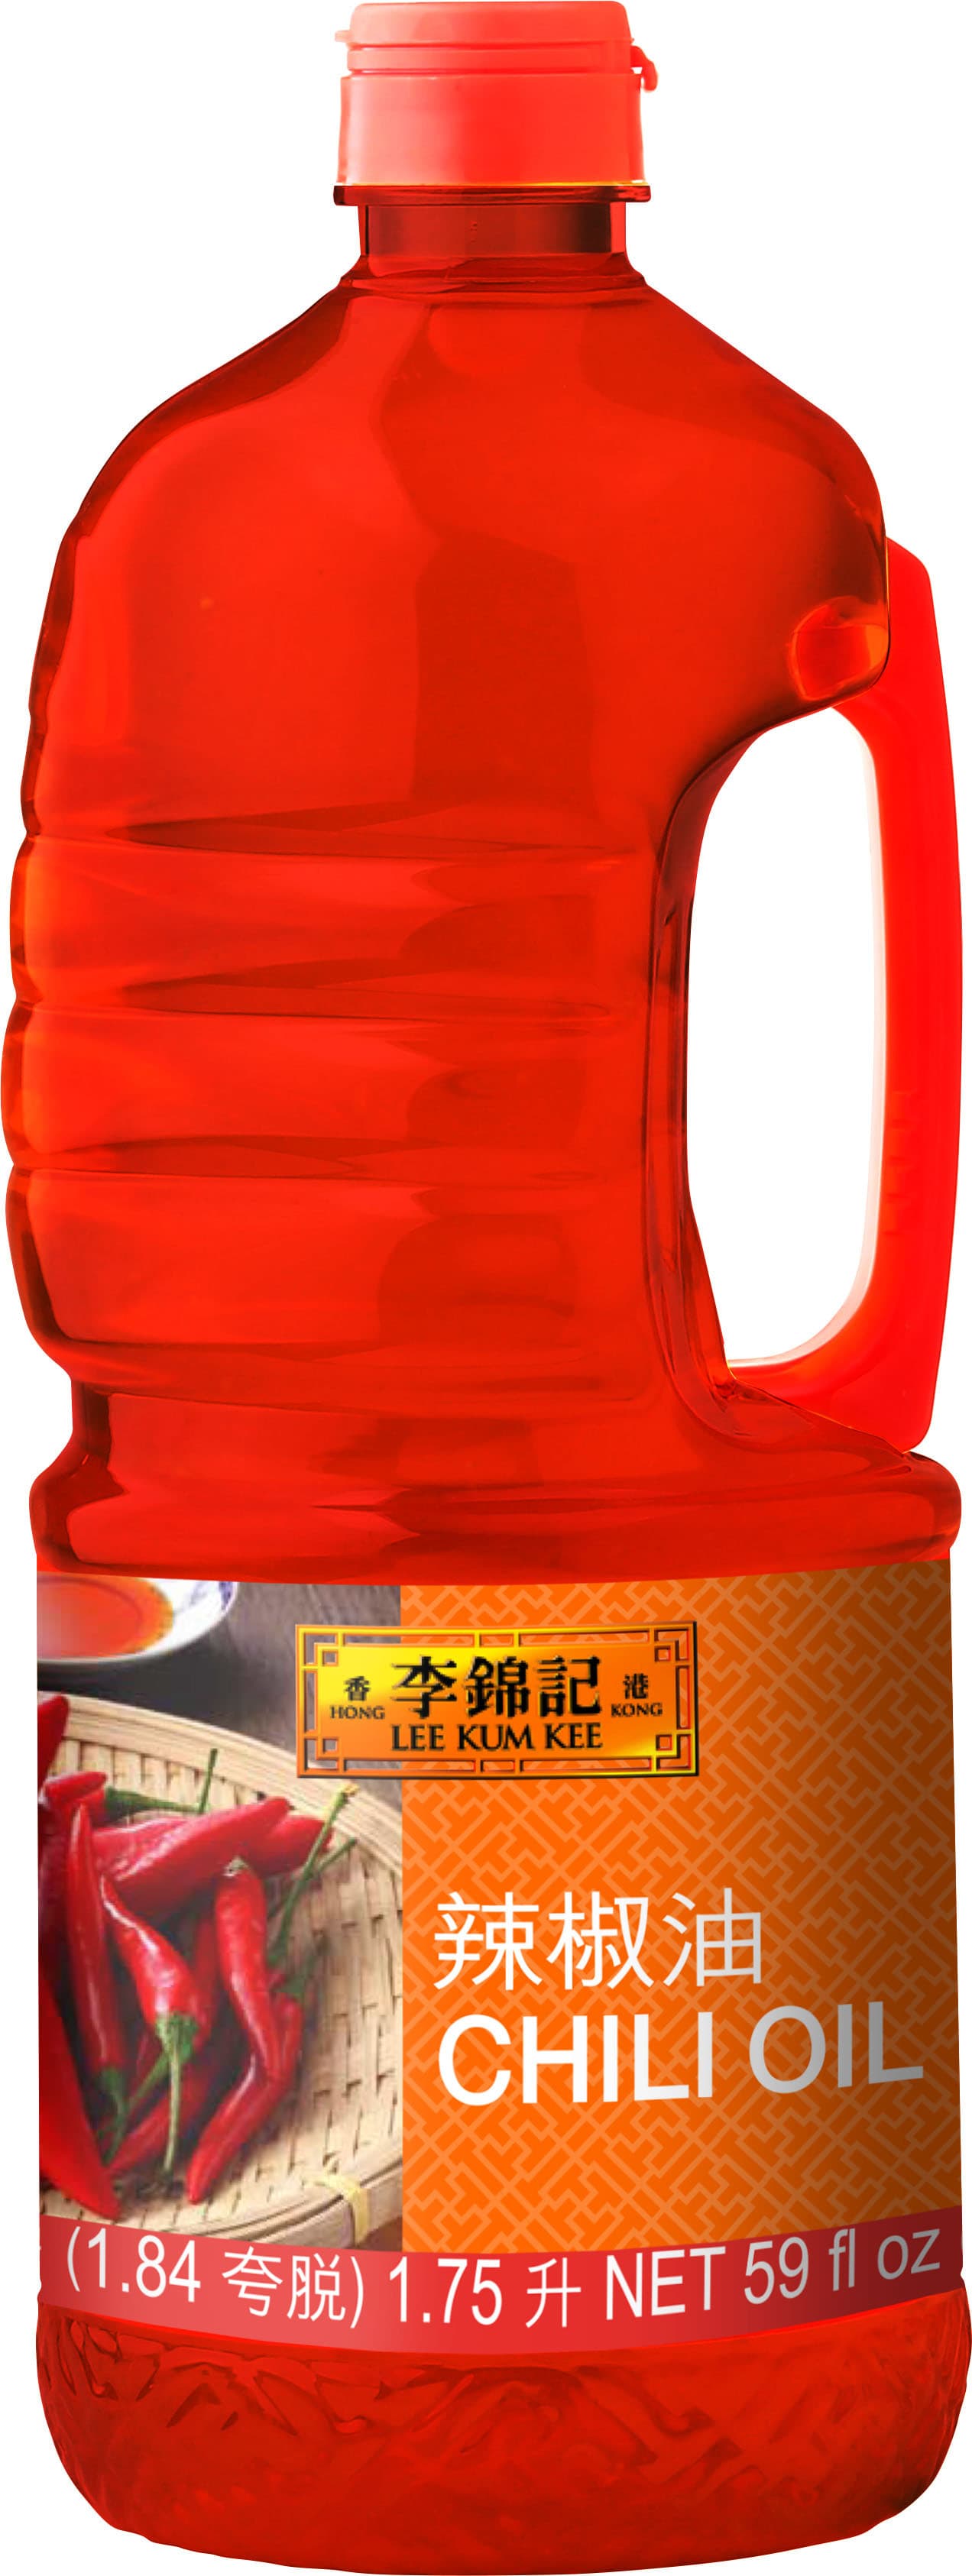 辣椒油,  59 fl oz (1.75 L), 桶裝